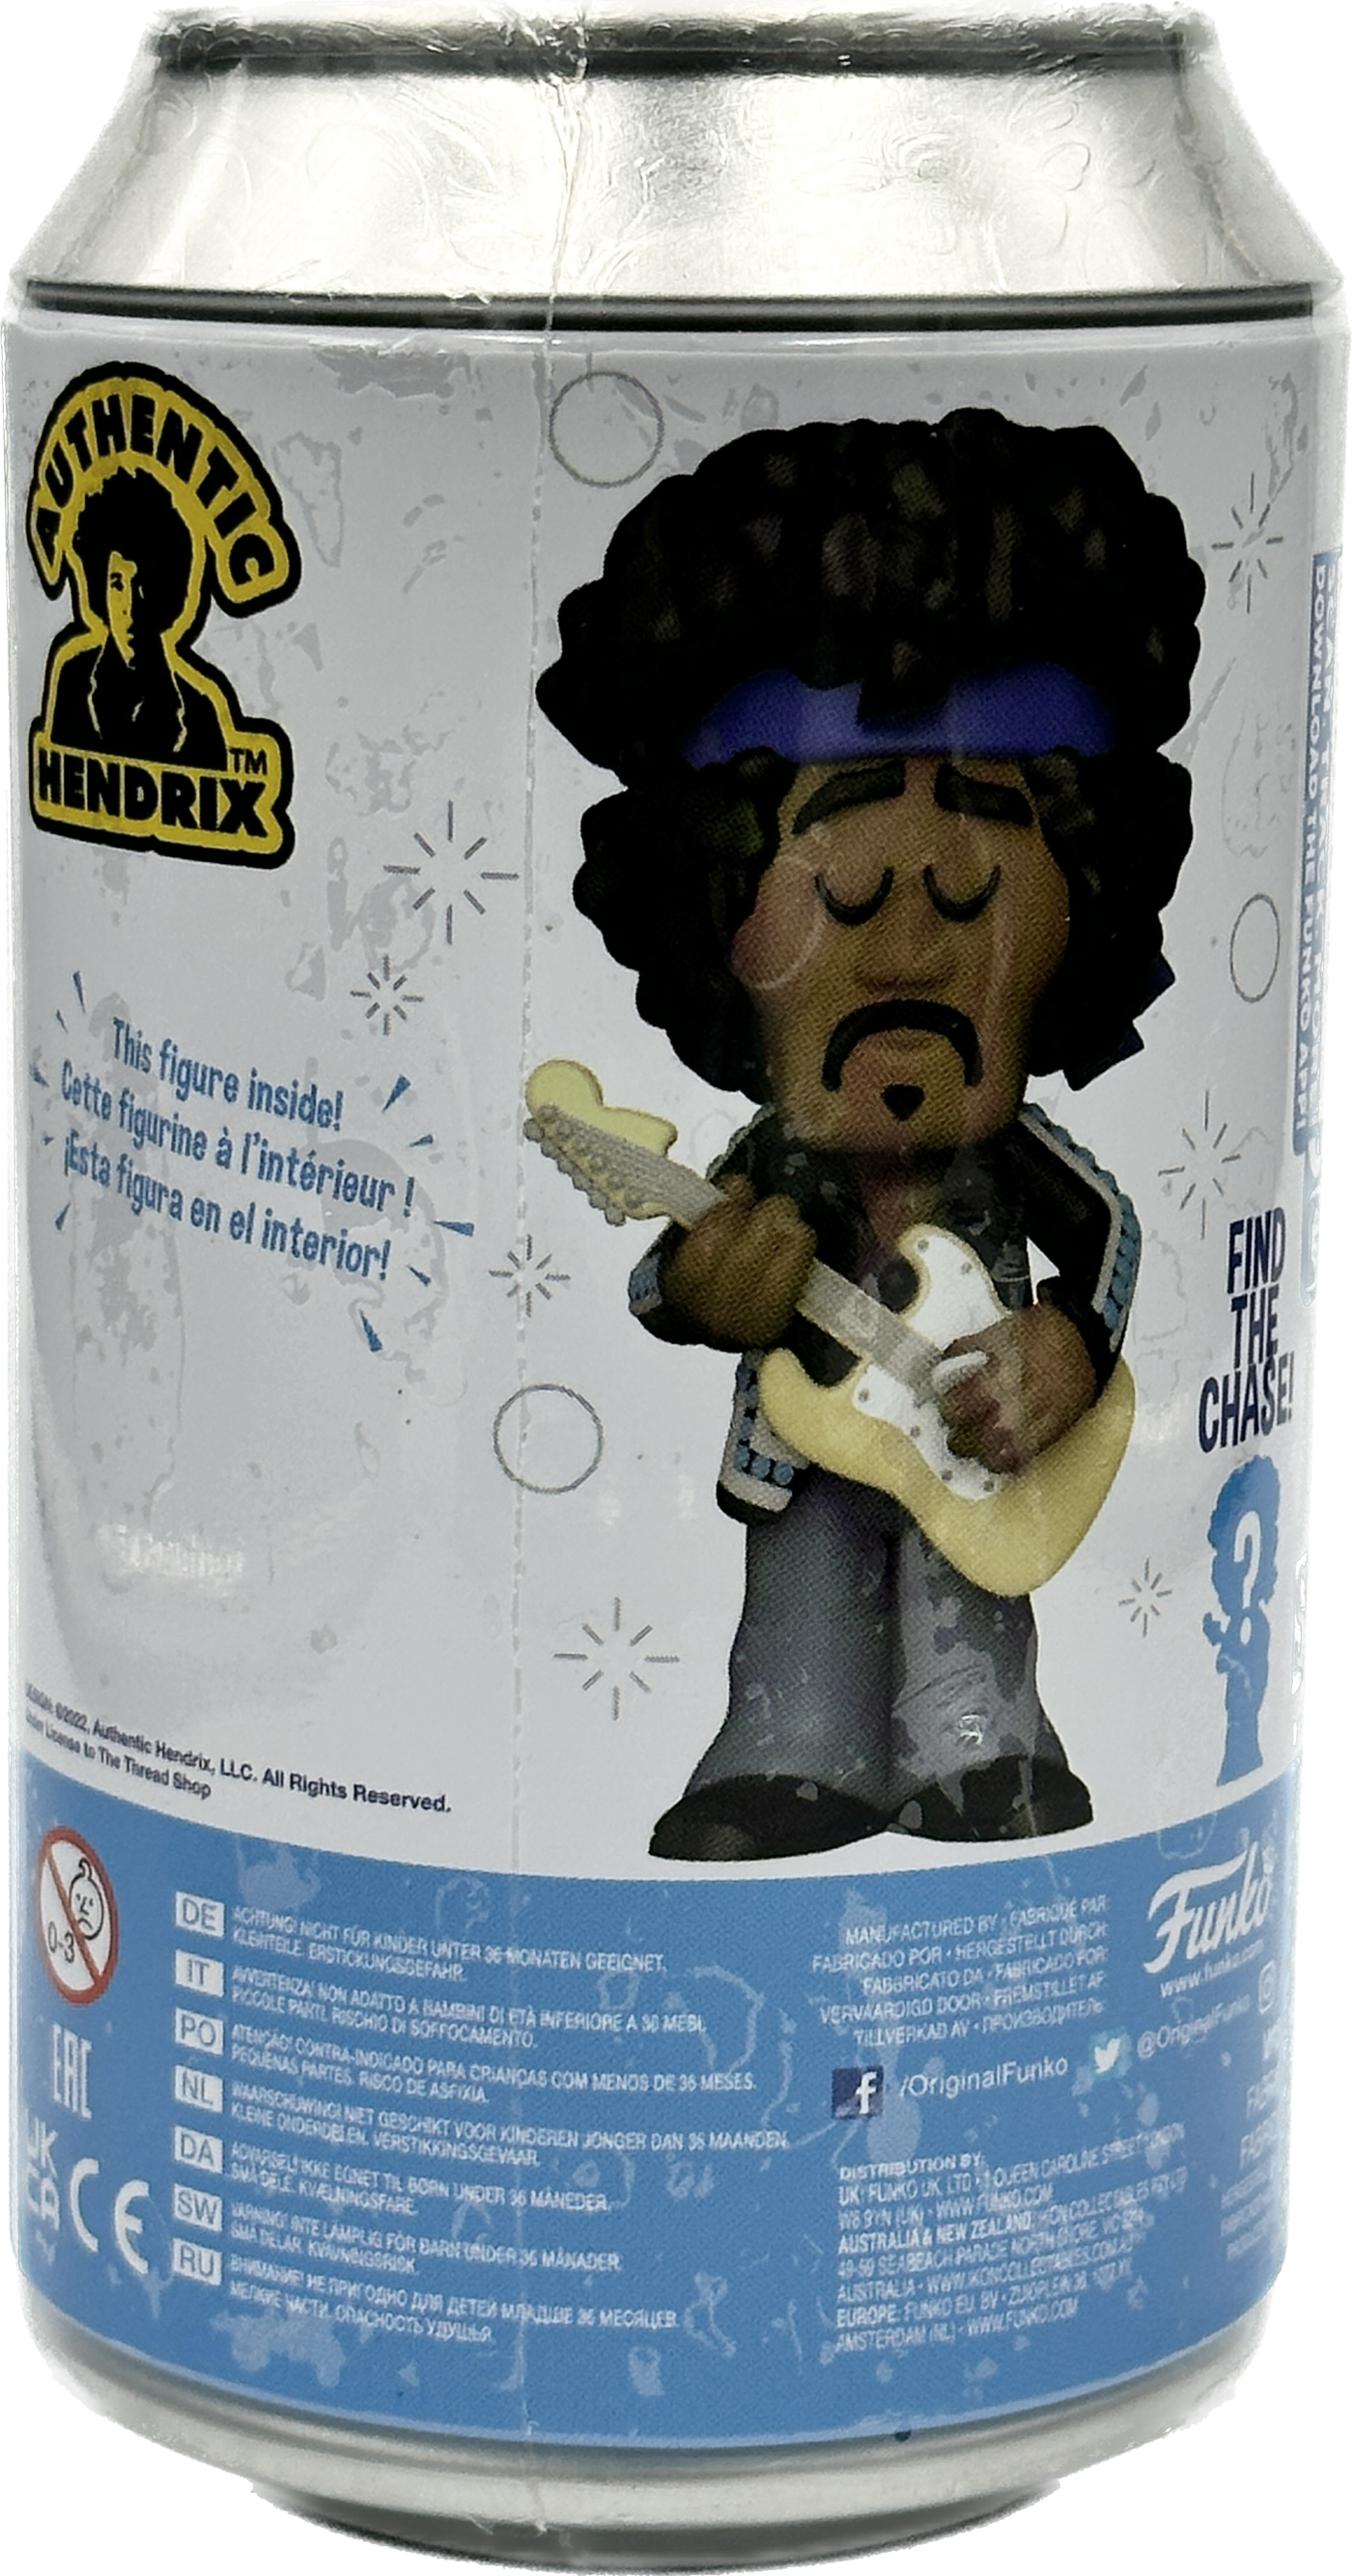 Funko Soda Figure | Jimi Hendrix | LE 15k | FunKon Exclusive